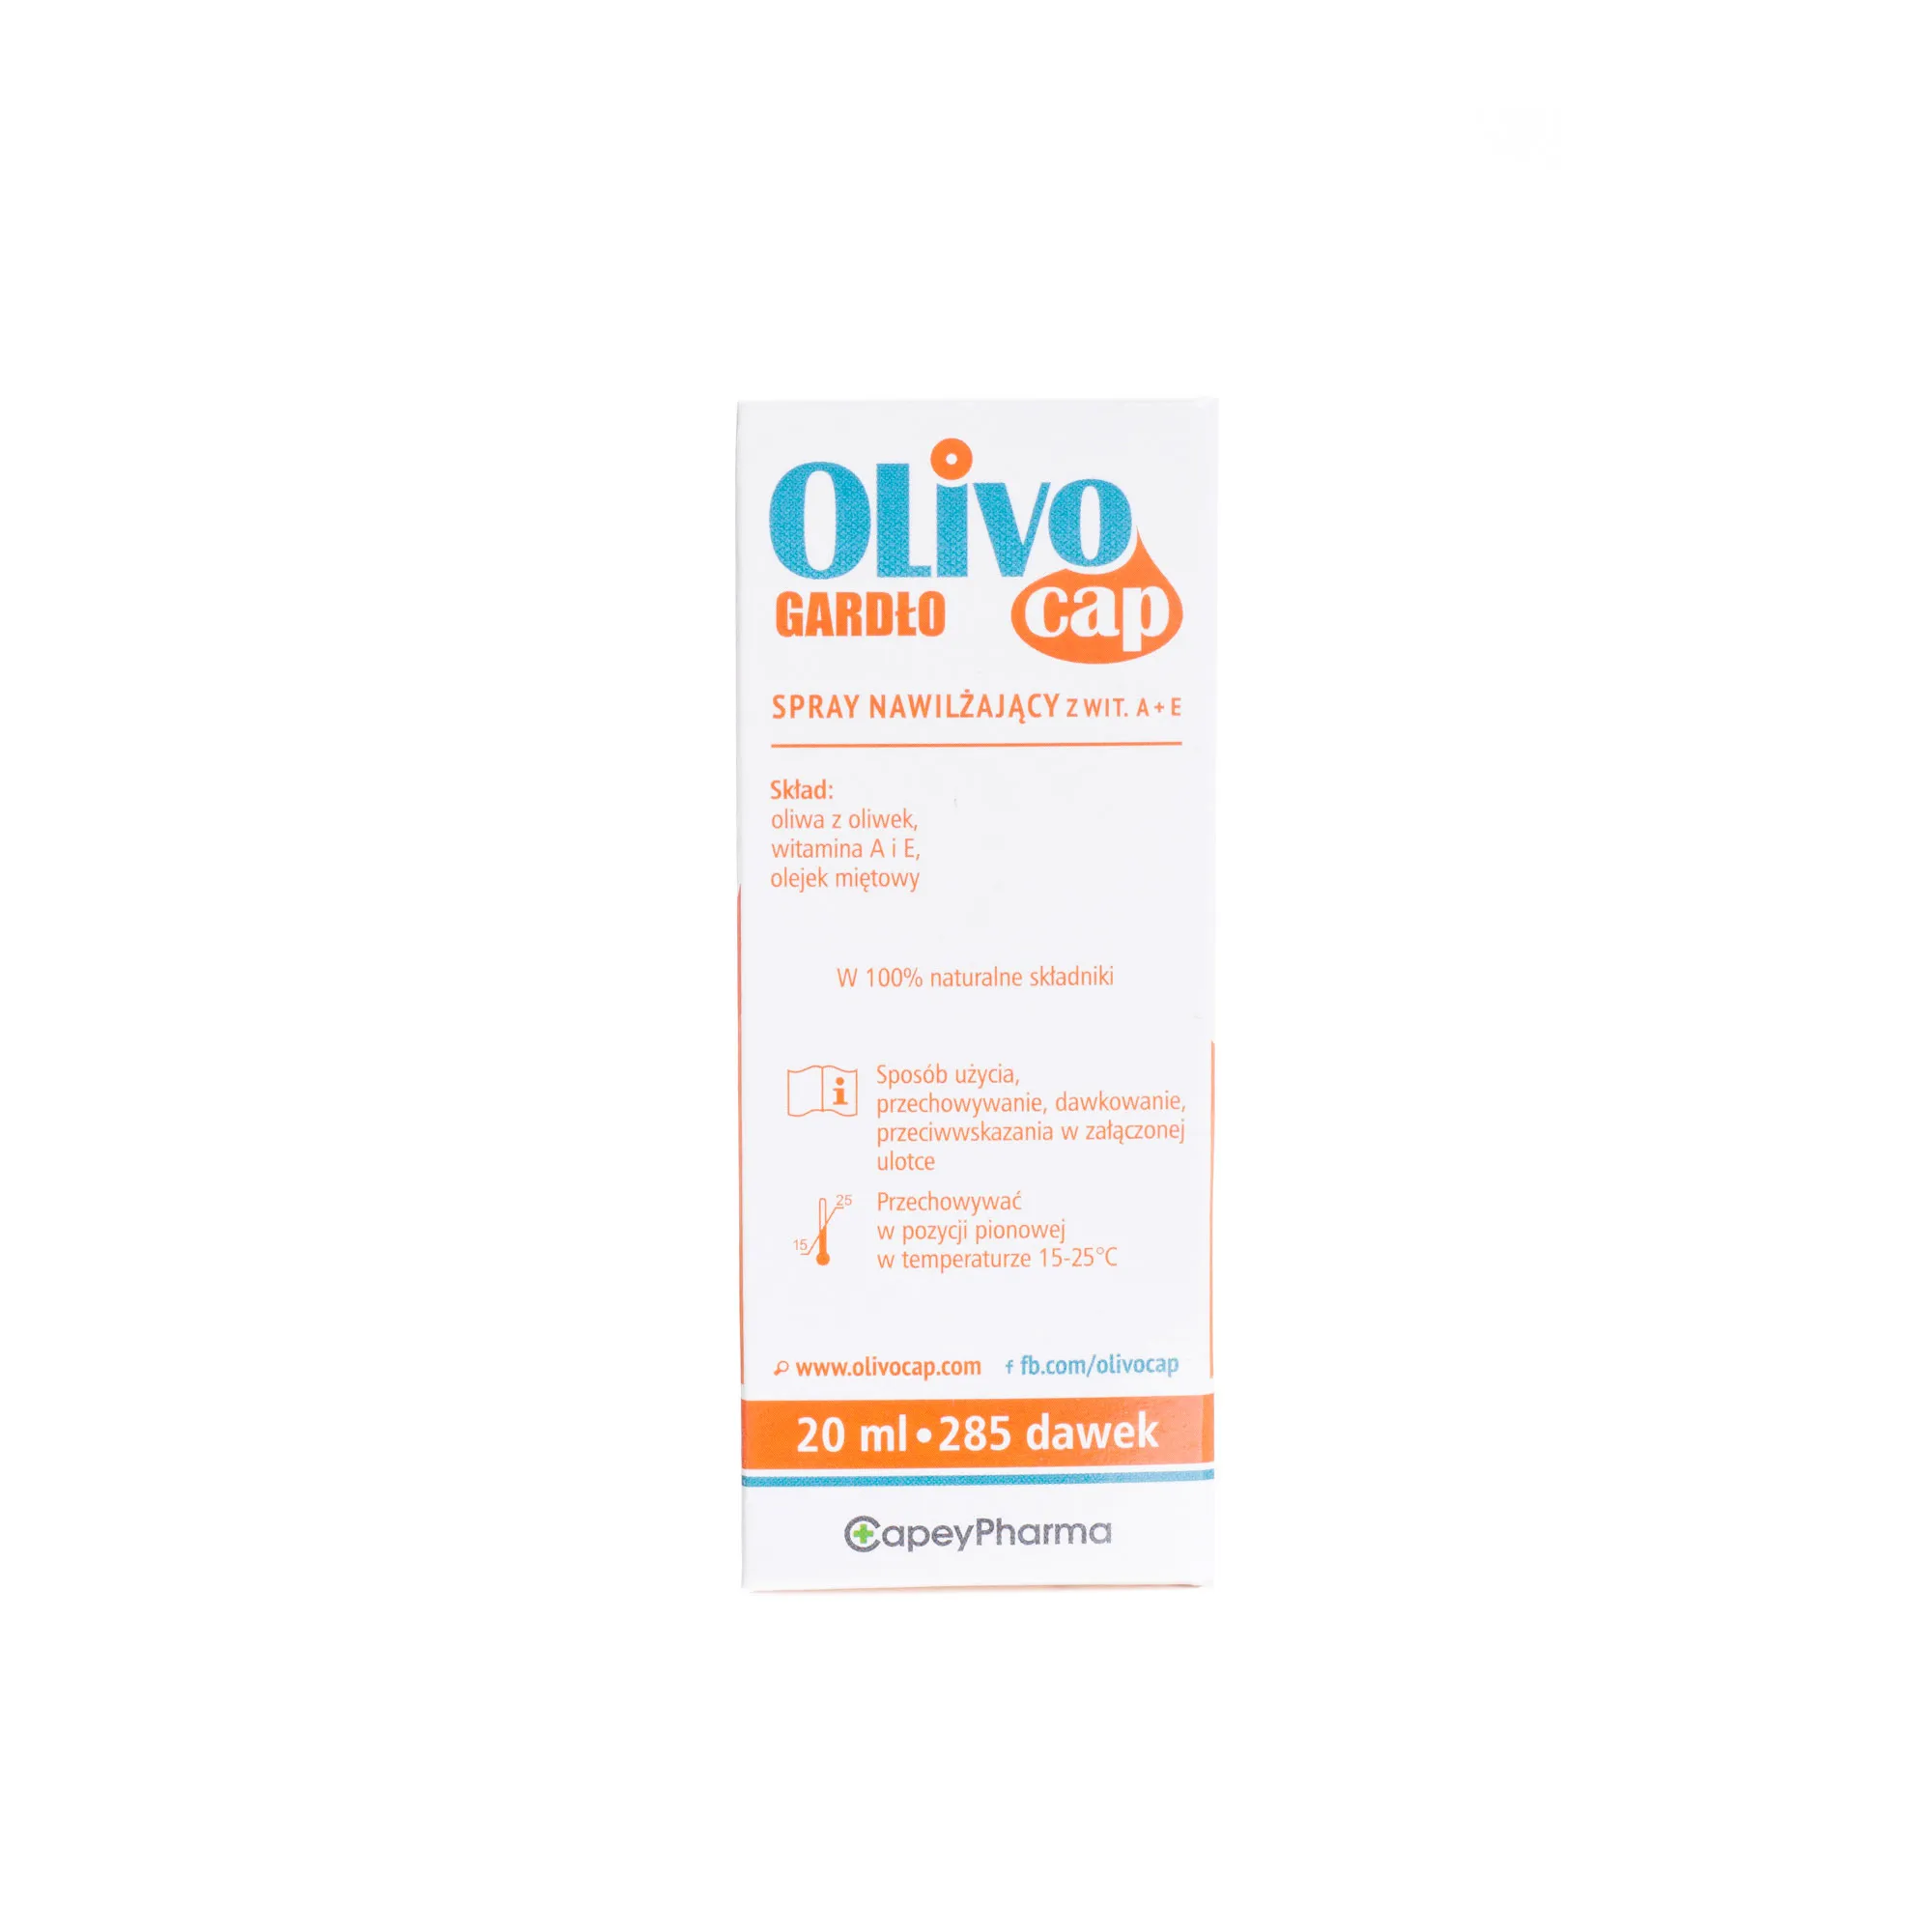 Olivocap Gardło, spray nawilżający z witaminą A+E, 20ml, 285 dawek 